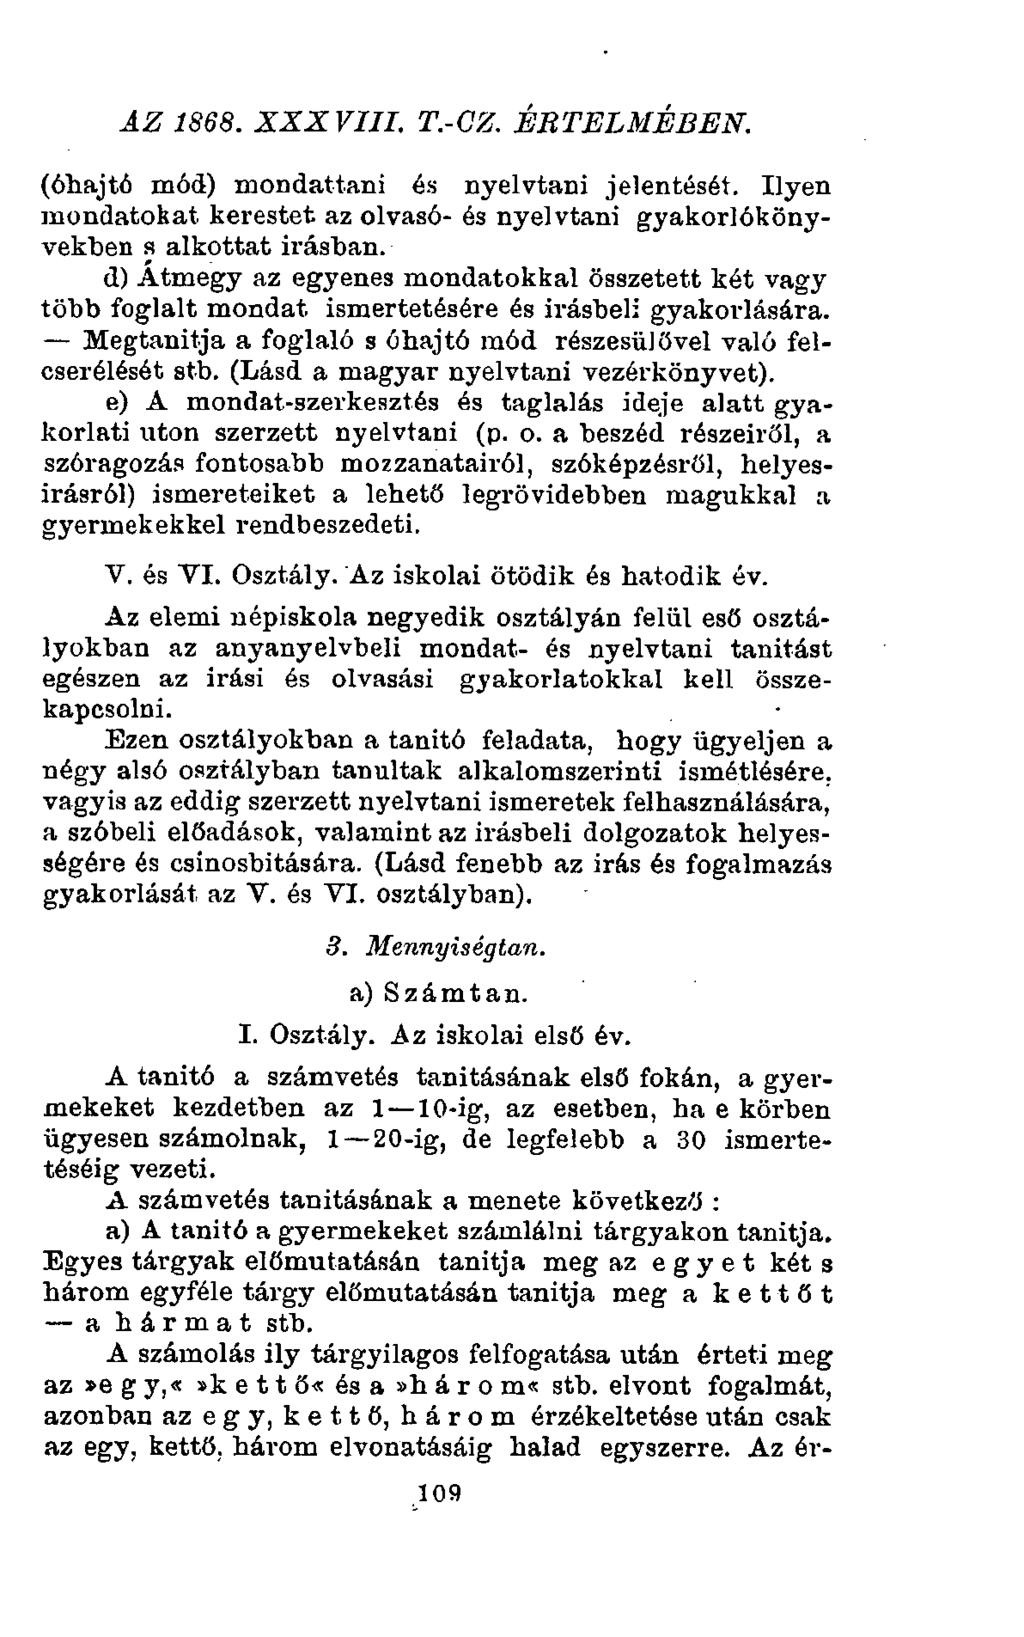 az 1868. xxx viii. t.-cz. értelmében. (óhajtó mód) mondattani és nyelvtani jelentését. Ilyen mondatokat kerestet az olvasó- és nyelvtani gyakorlókönyvekben s alkottat Írásban.